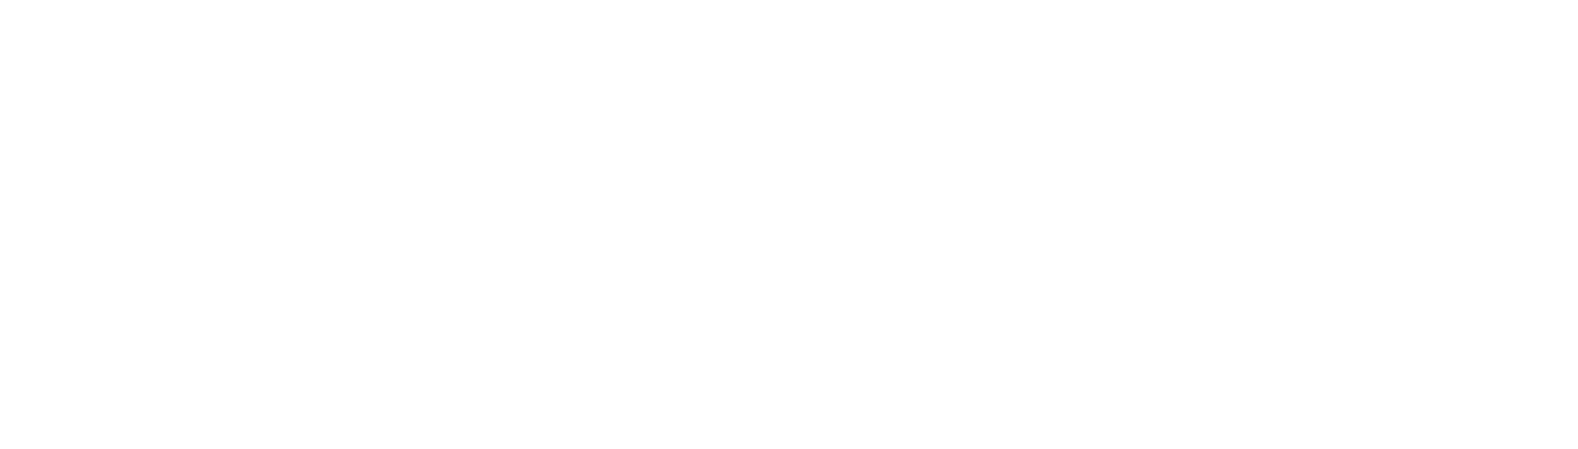 Boardwalk Real Estate Investment Trust logo large for dark backgrounds (transparent PNG)